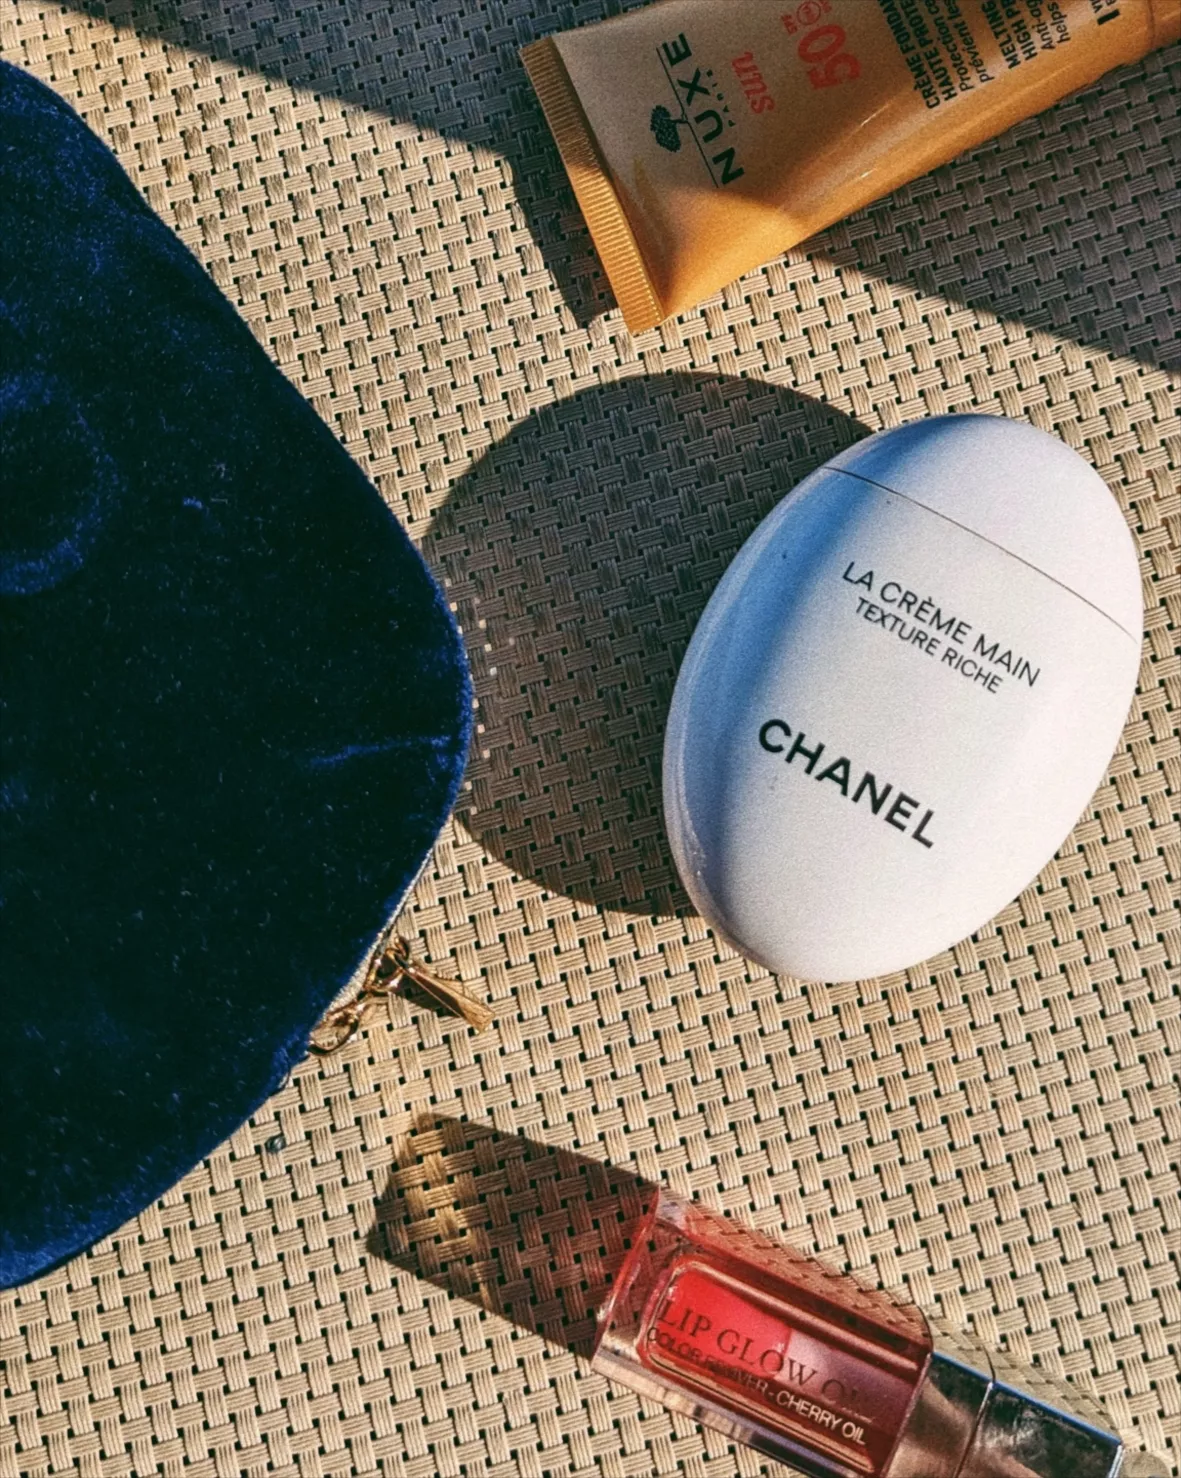 Chanel La Creme Main Hand Cream Texture Riche 50ml NEU & OVP